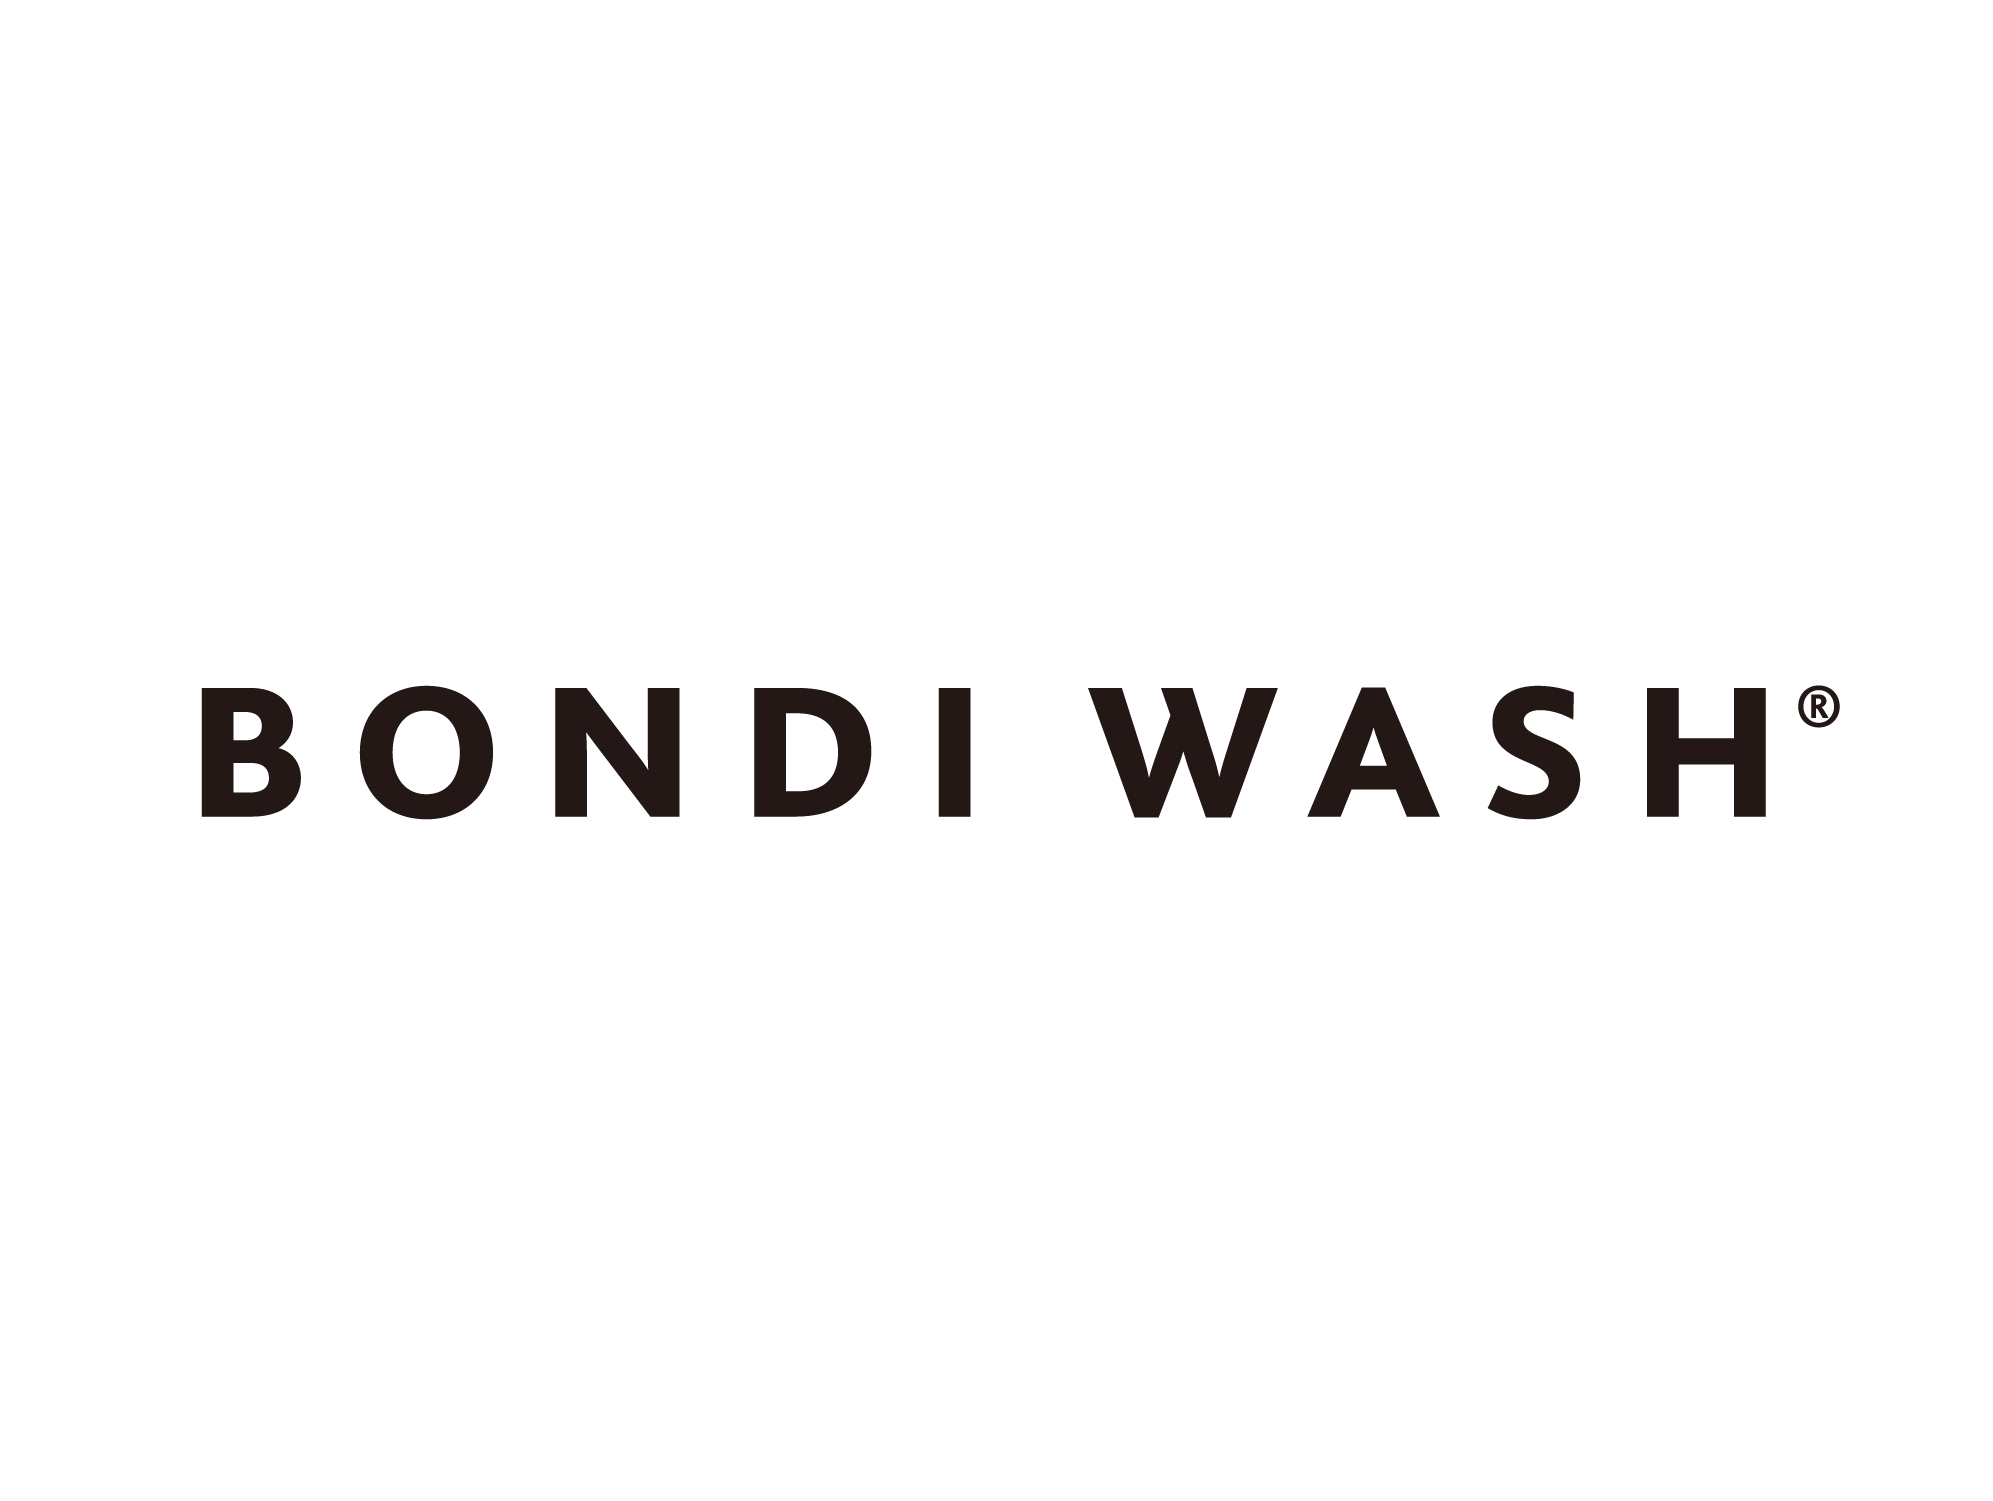 BONDI WASH